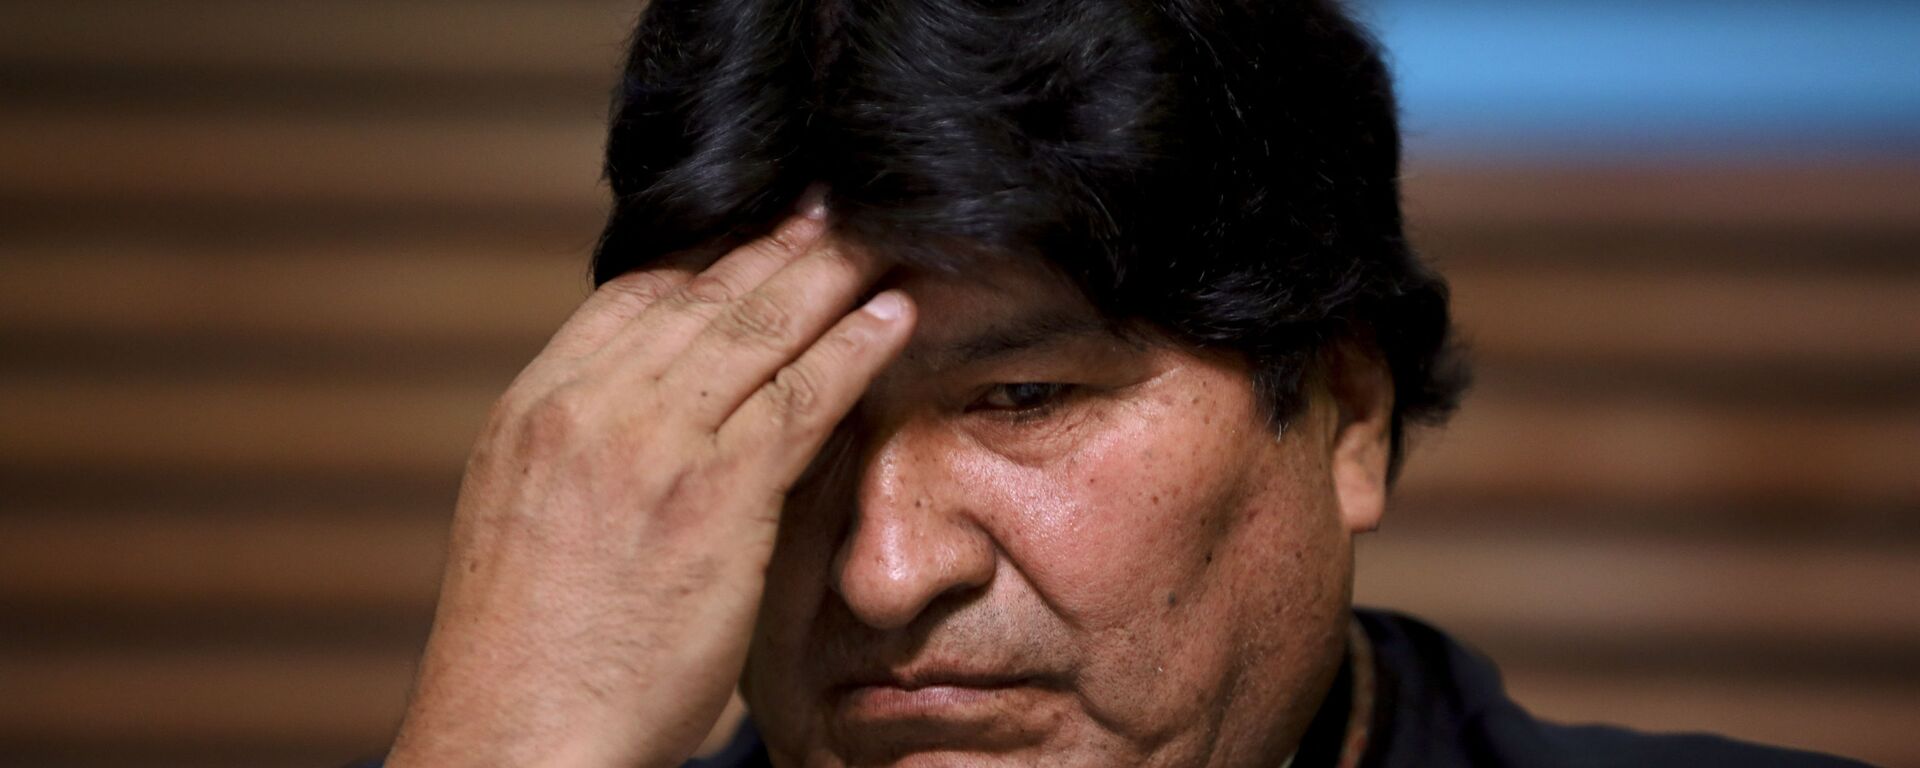 Evo Morales, expresidente de Bolivia - Sputnik Mundo, 1920, 20.01.2021